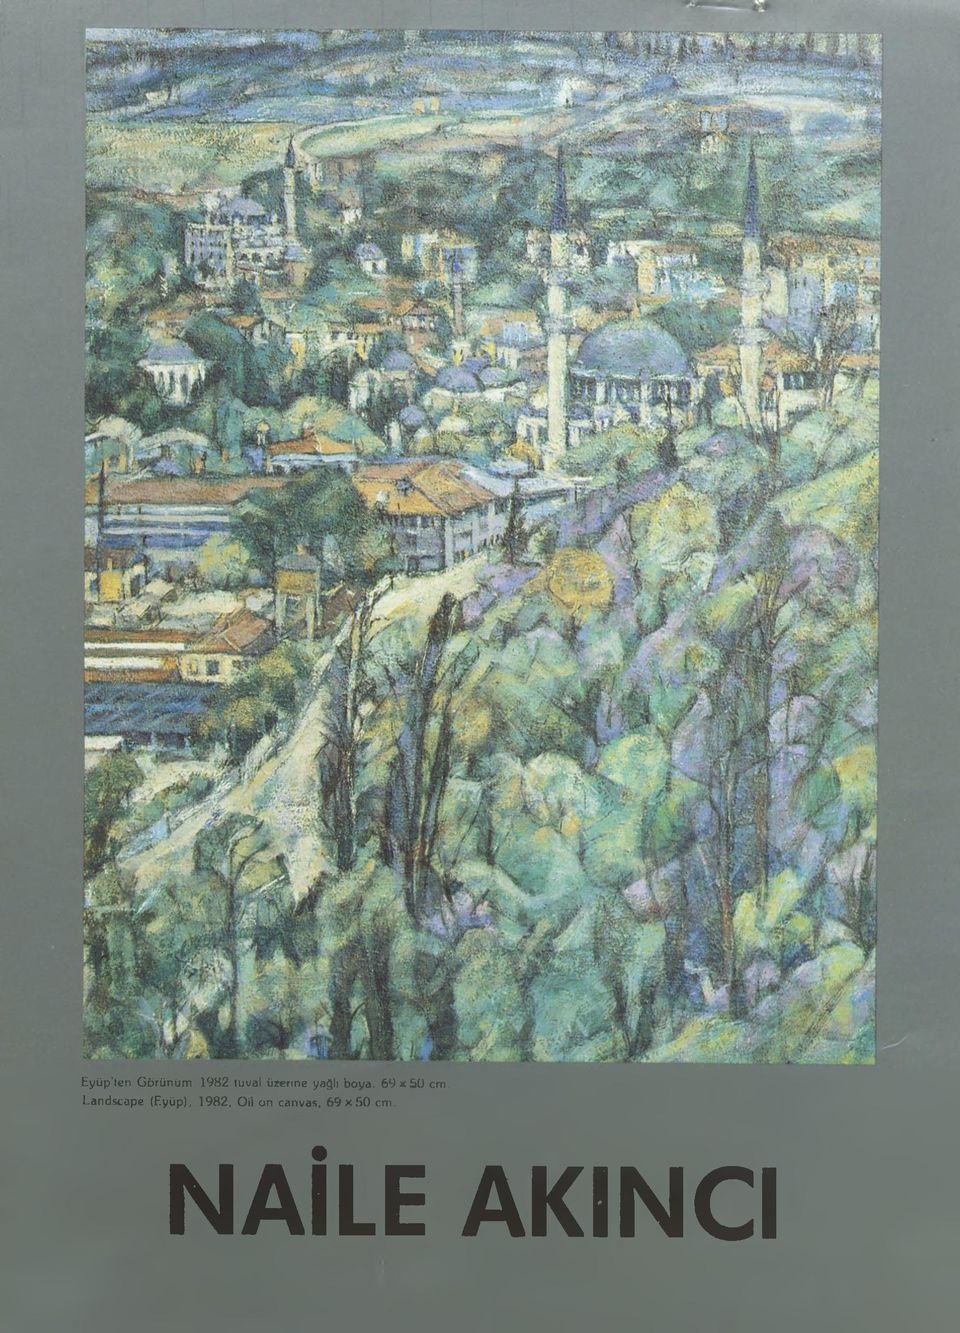 Landscape (Eyüp), 1982, Oil on